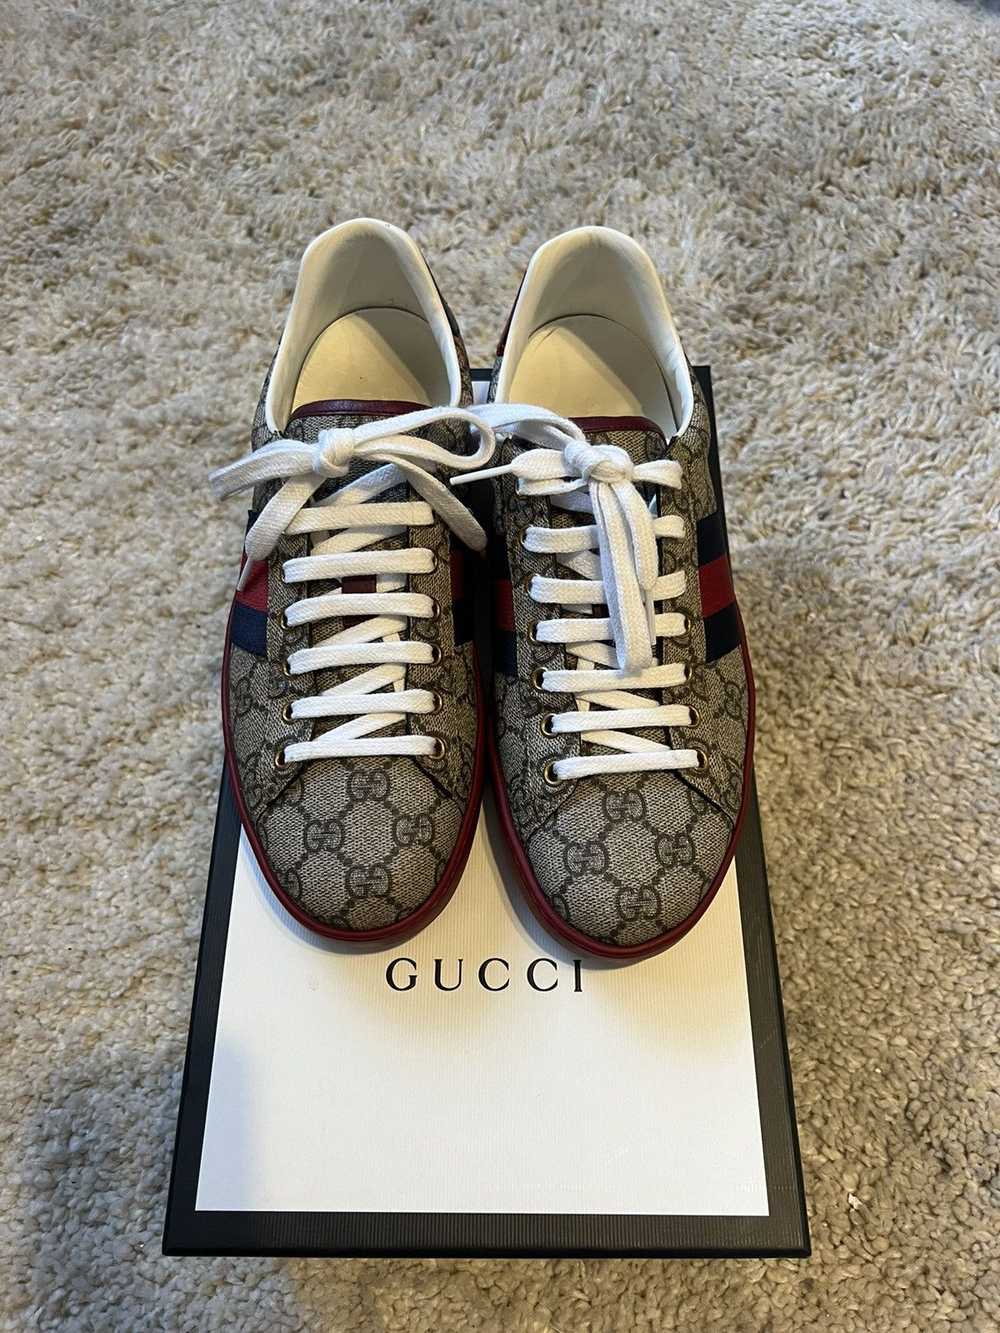 Gucci GUCCI ACES GG SUPREME SNEAKERS - image 1